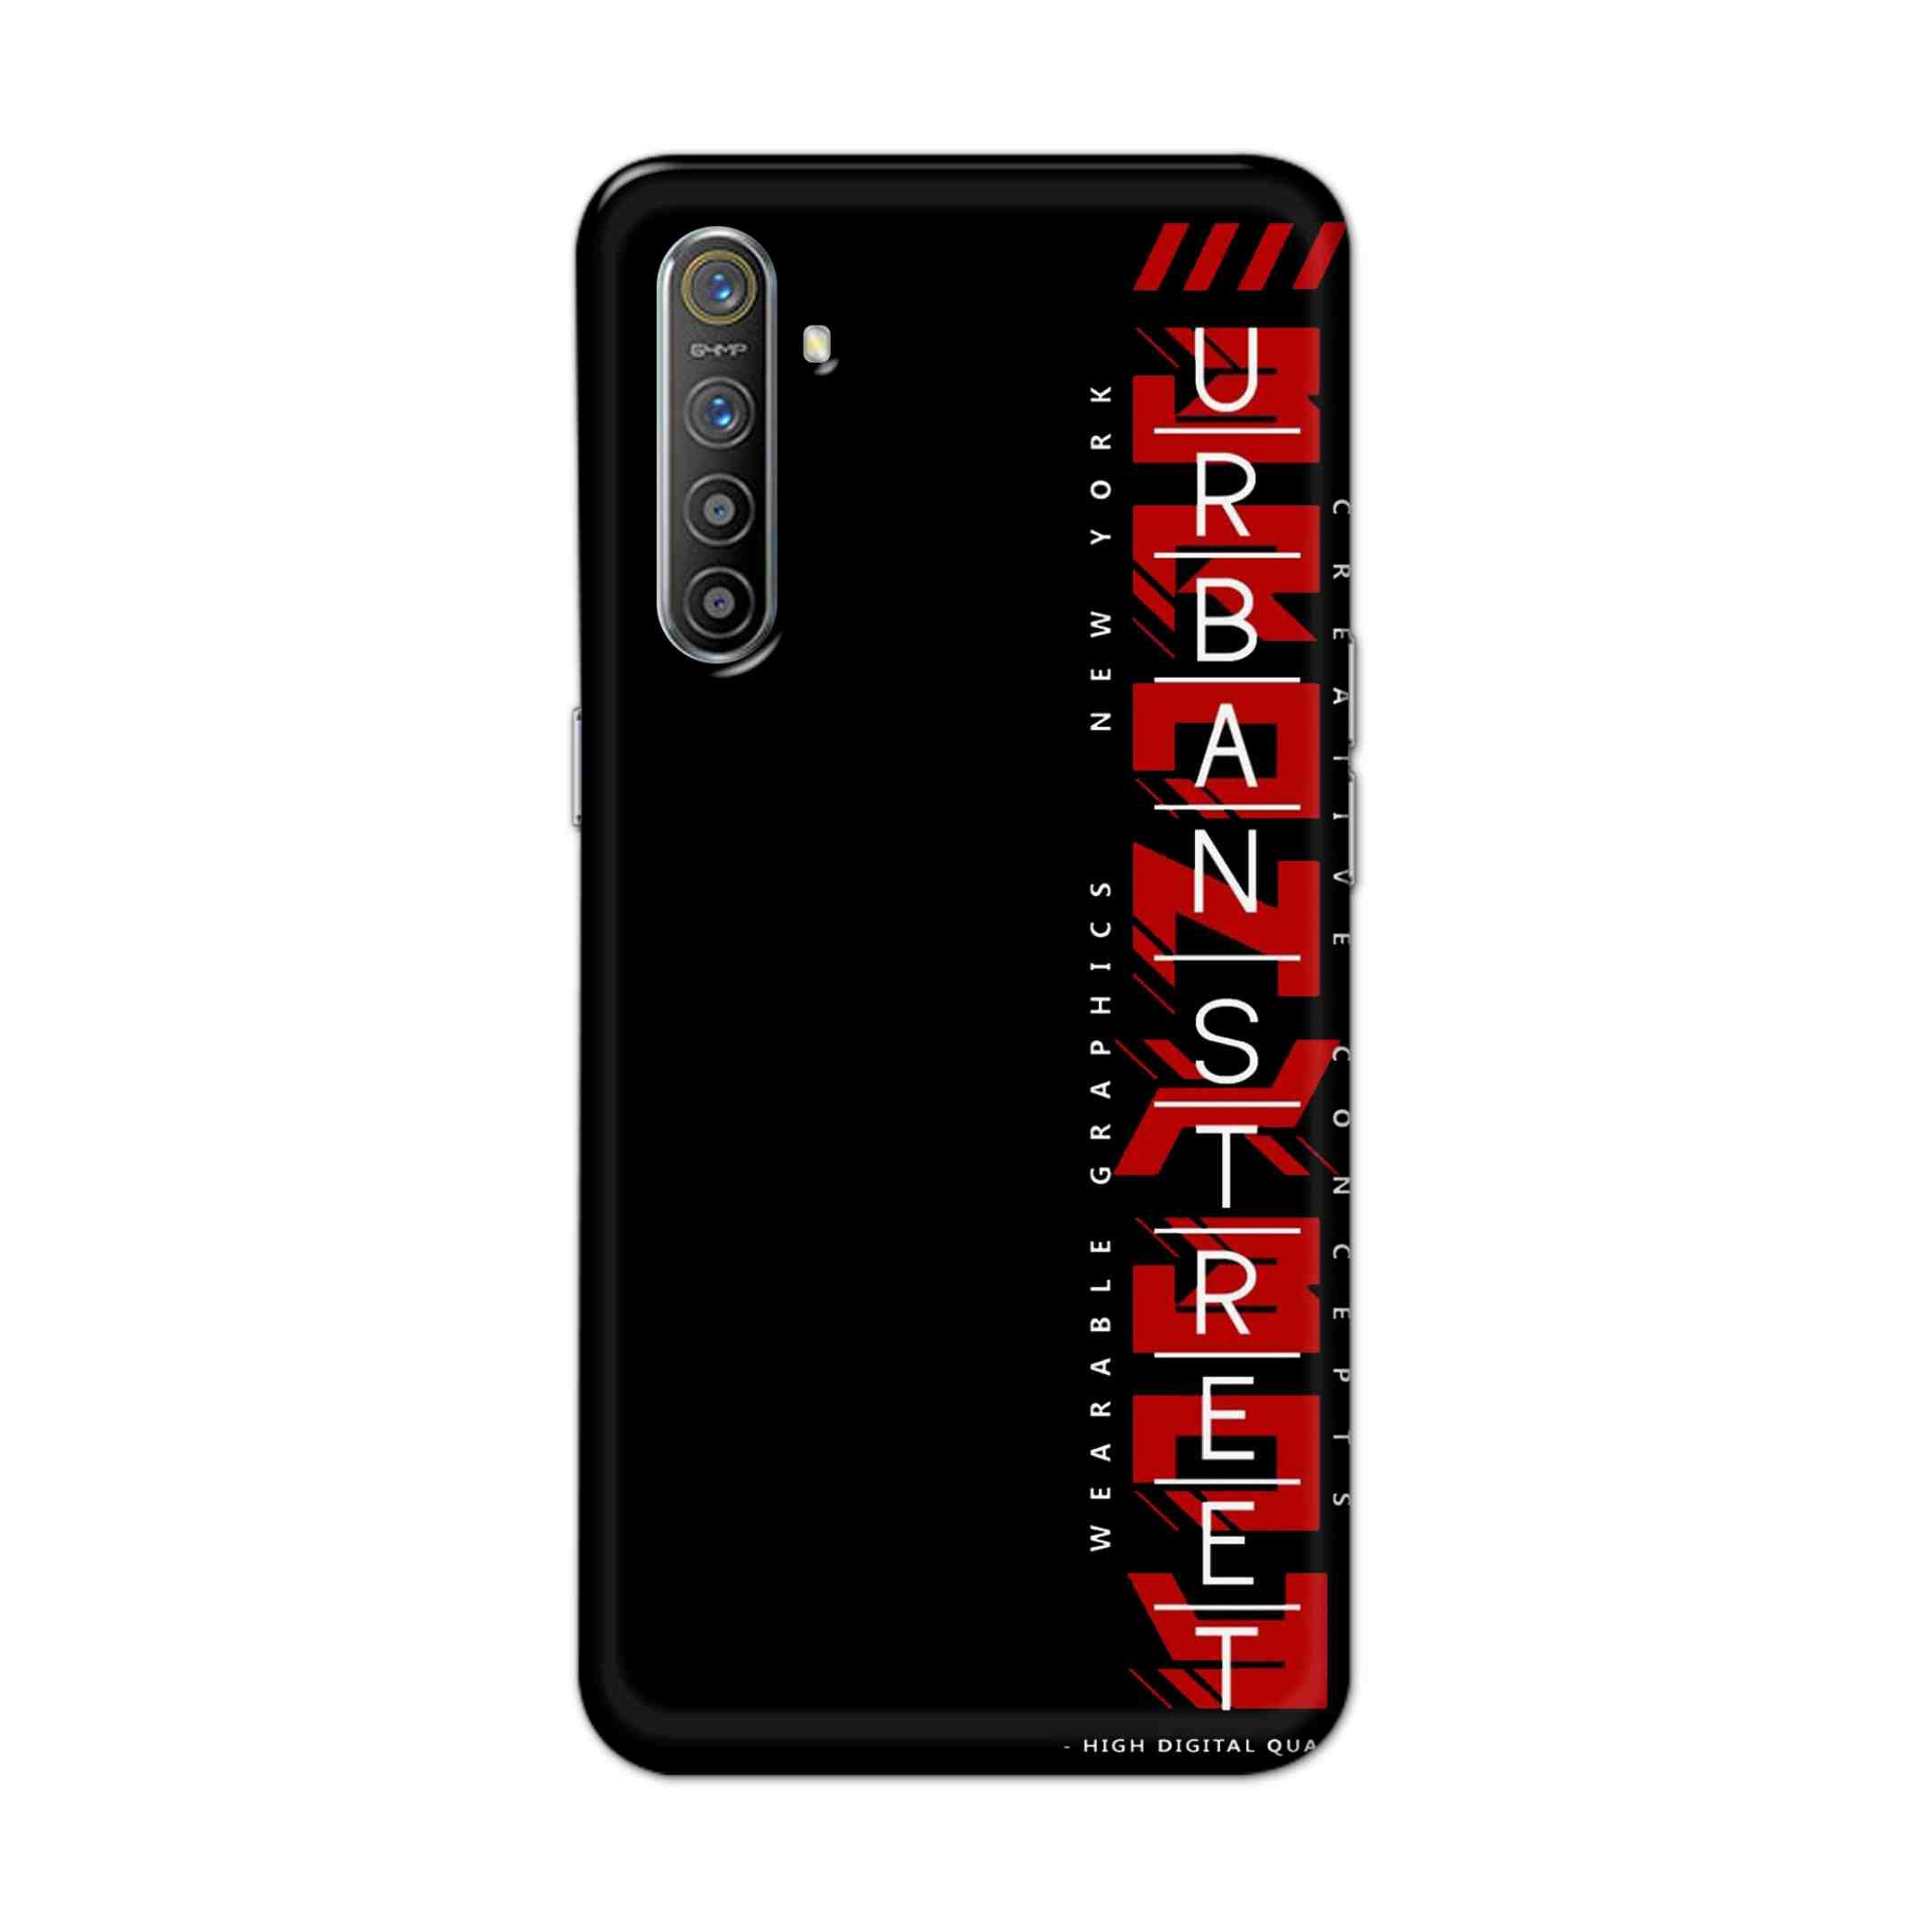 Buy Urban Street Hard Back Mobile Phone Case Cover For Oppo Realme XT Online